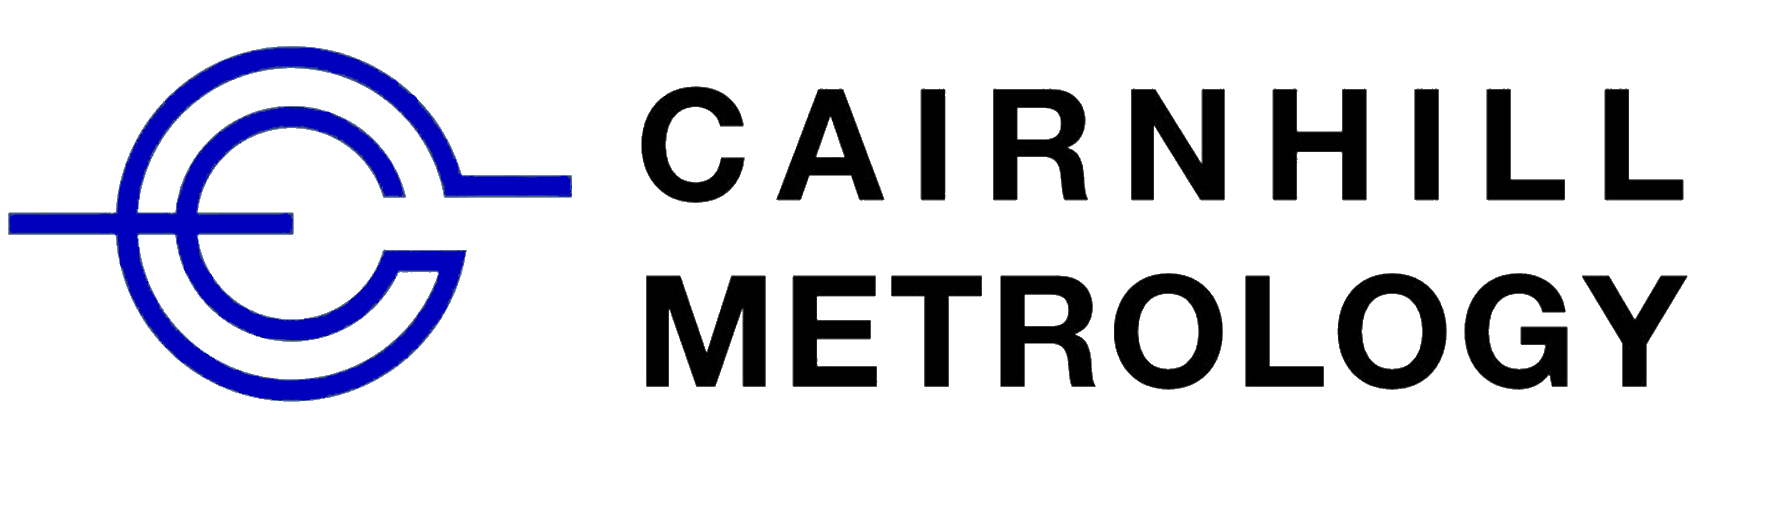 Cairnhill Metrology Logo